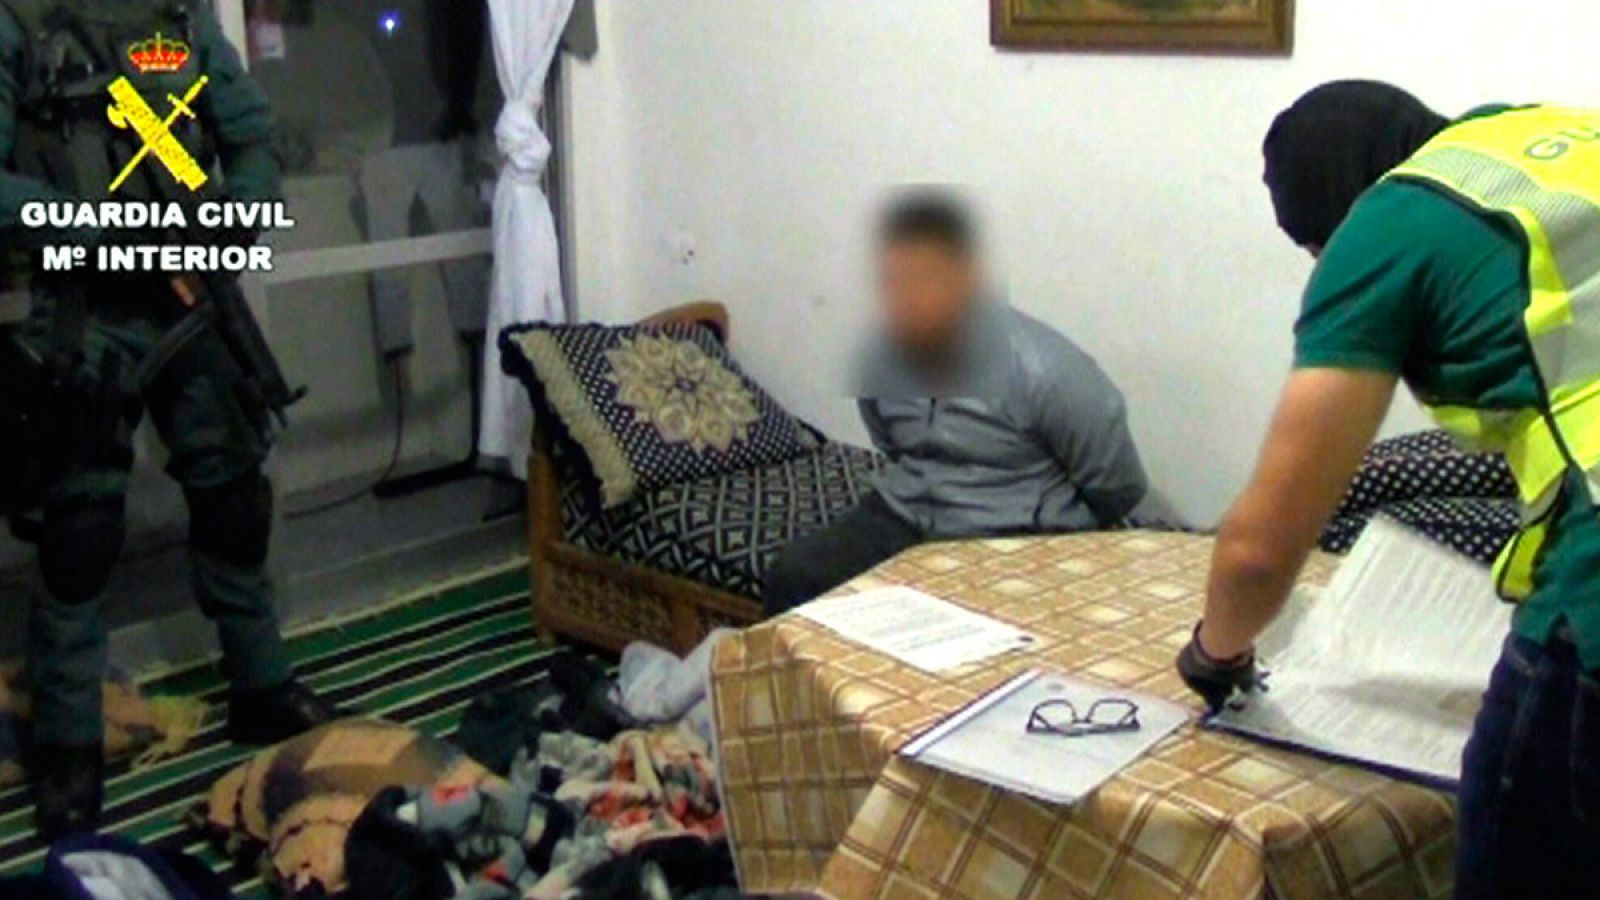 Imagen de la detención en Vinaroz (Castellón) del joven marroquí supuesto colaborador de la célula yihadista que atentó en Barcelona y Cambrils.